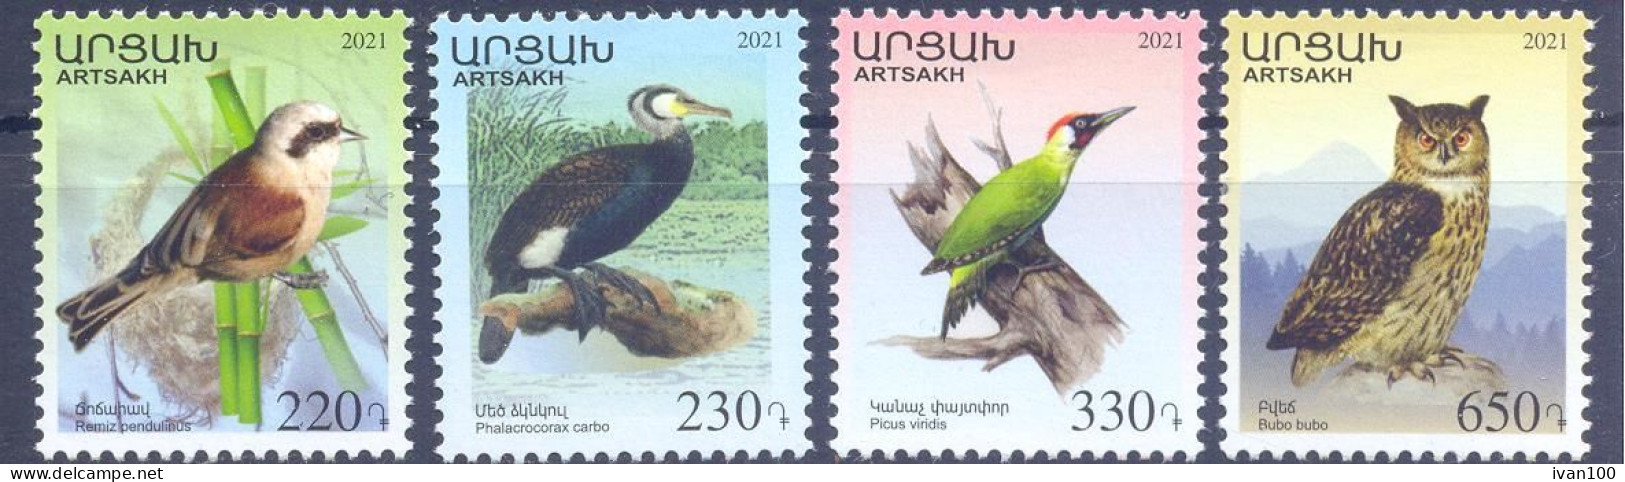 2021. Mountainous Karabakh, Birds Of Karabakh, 4v Perforated,  Mint/** - Armenia